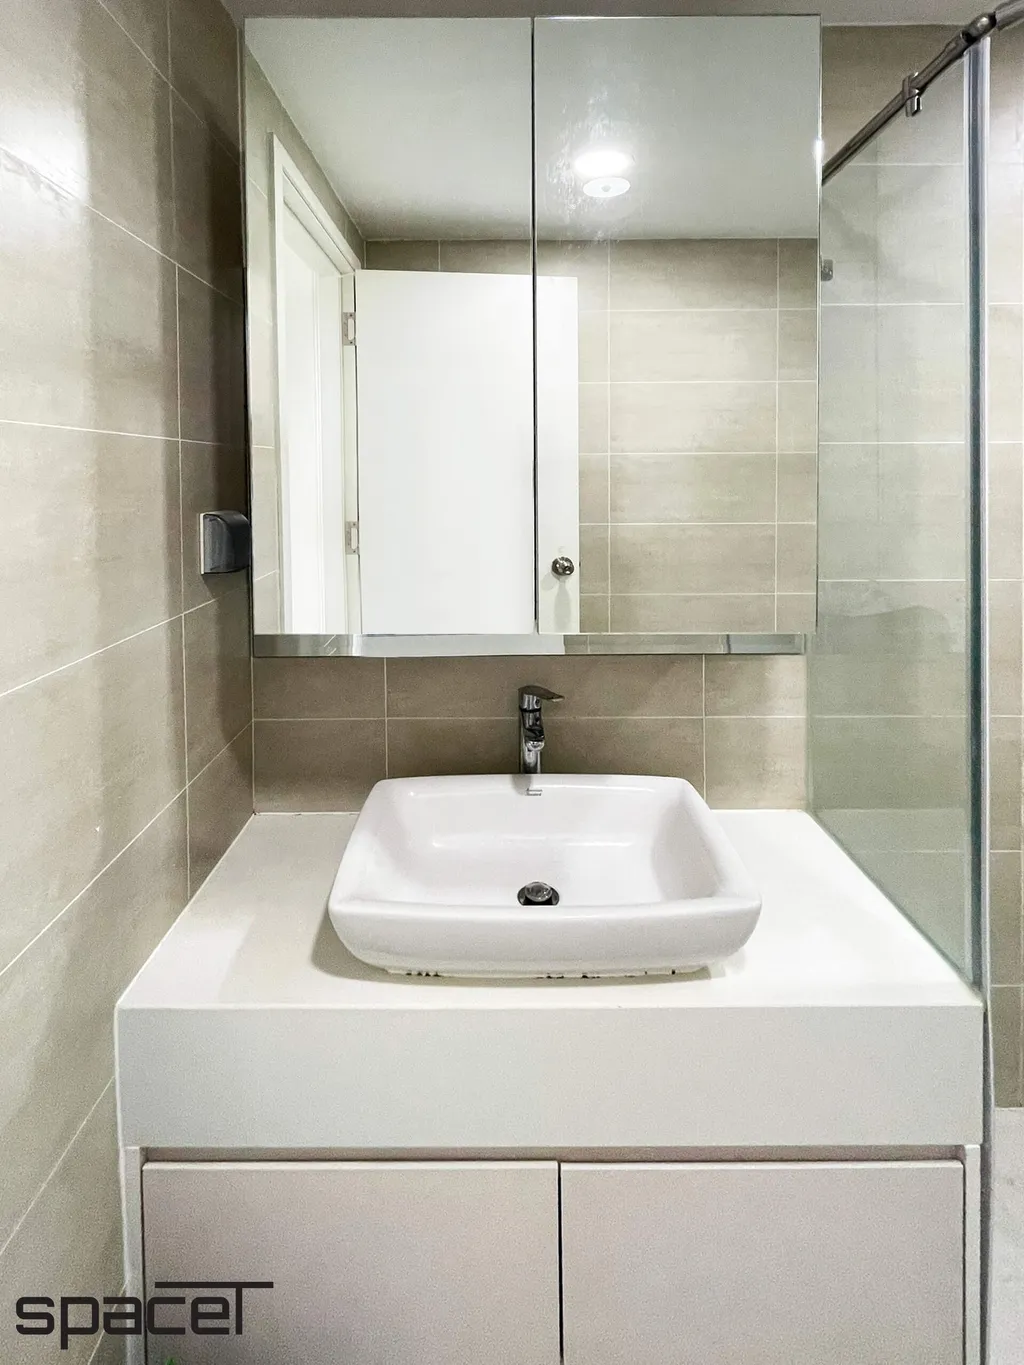 Nội thất tại khu vực phòng tắm - nhà vệ sinh của căn hộ chung cư